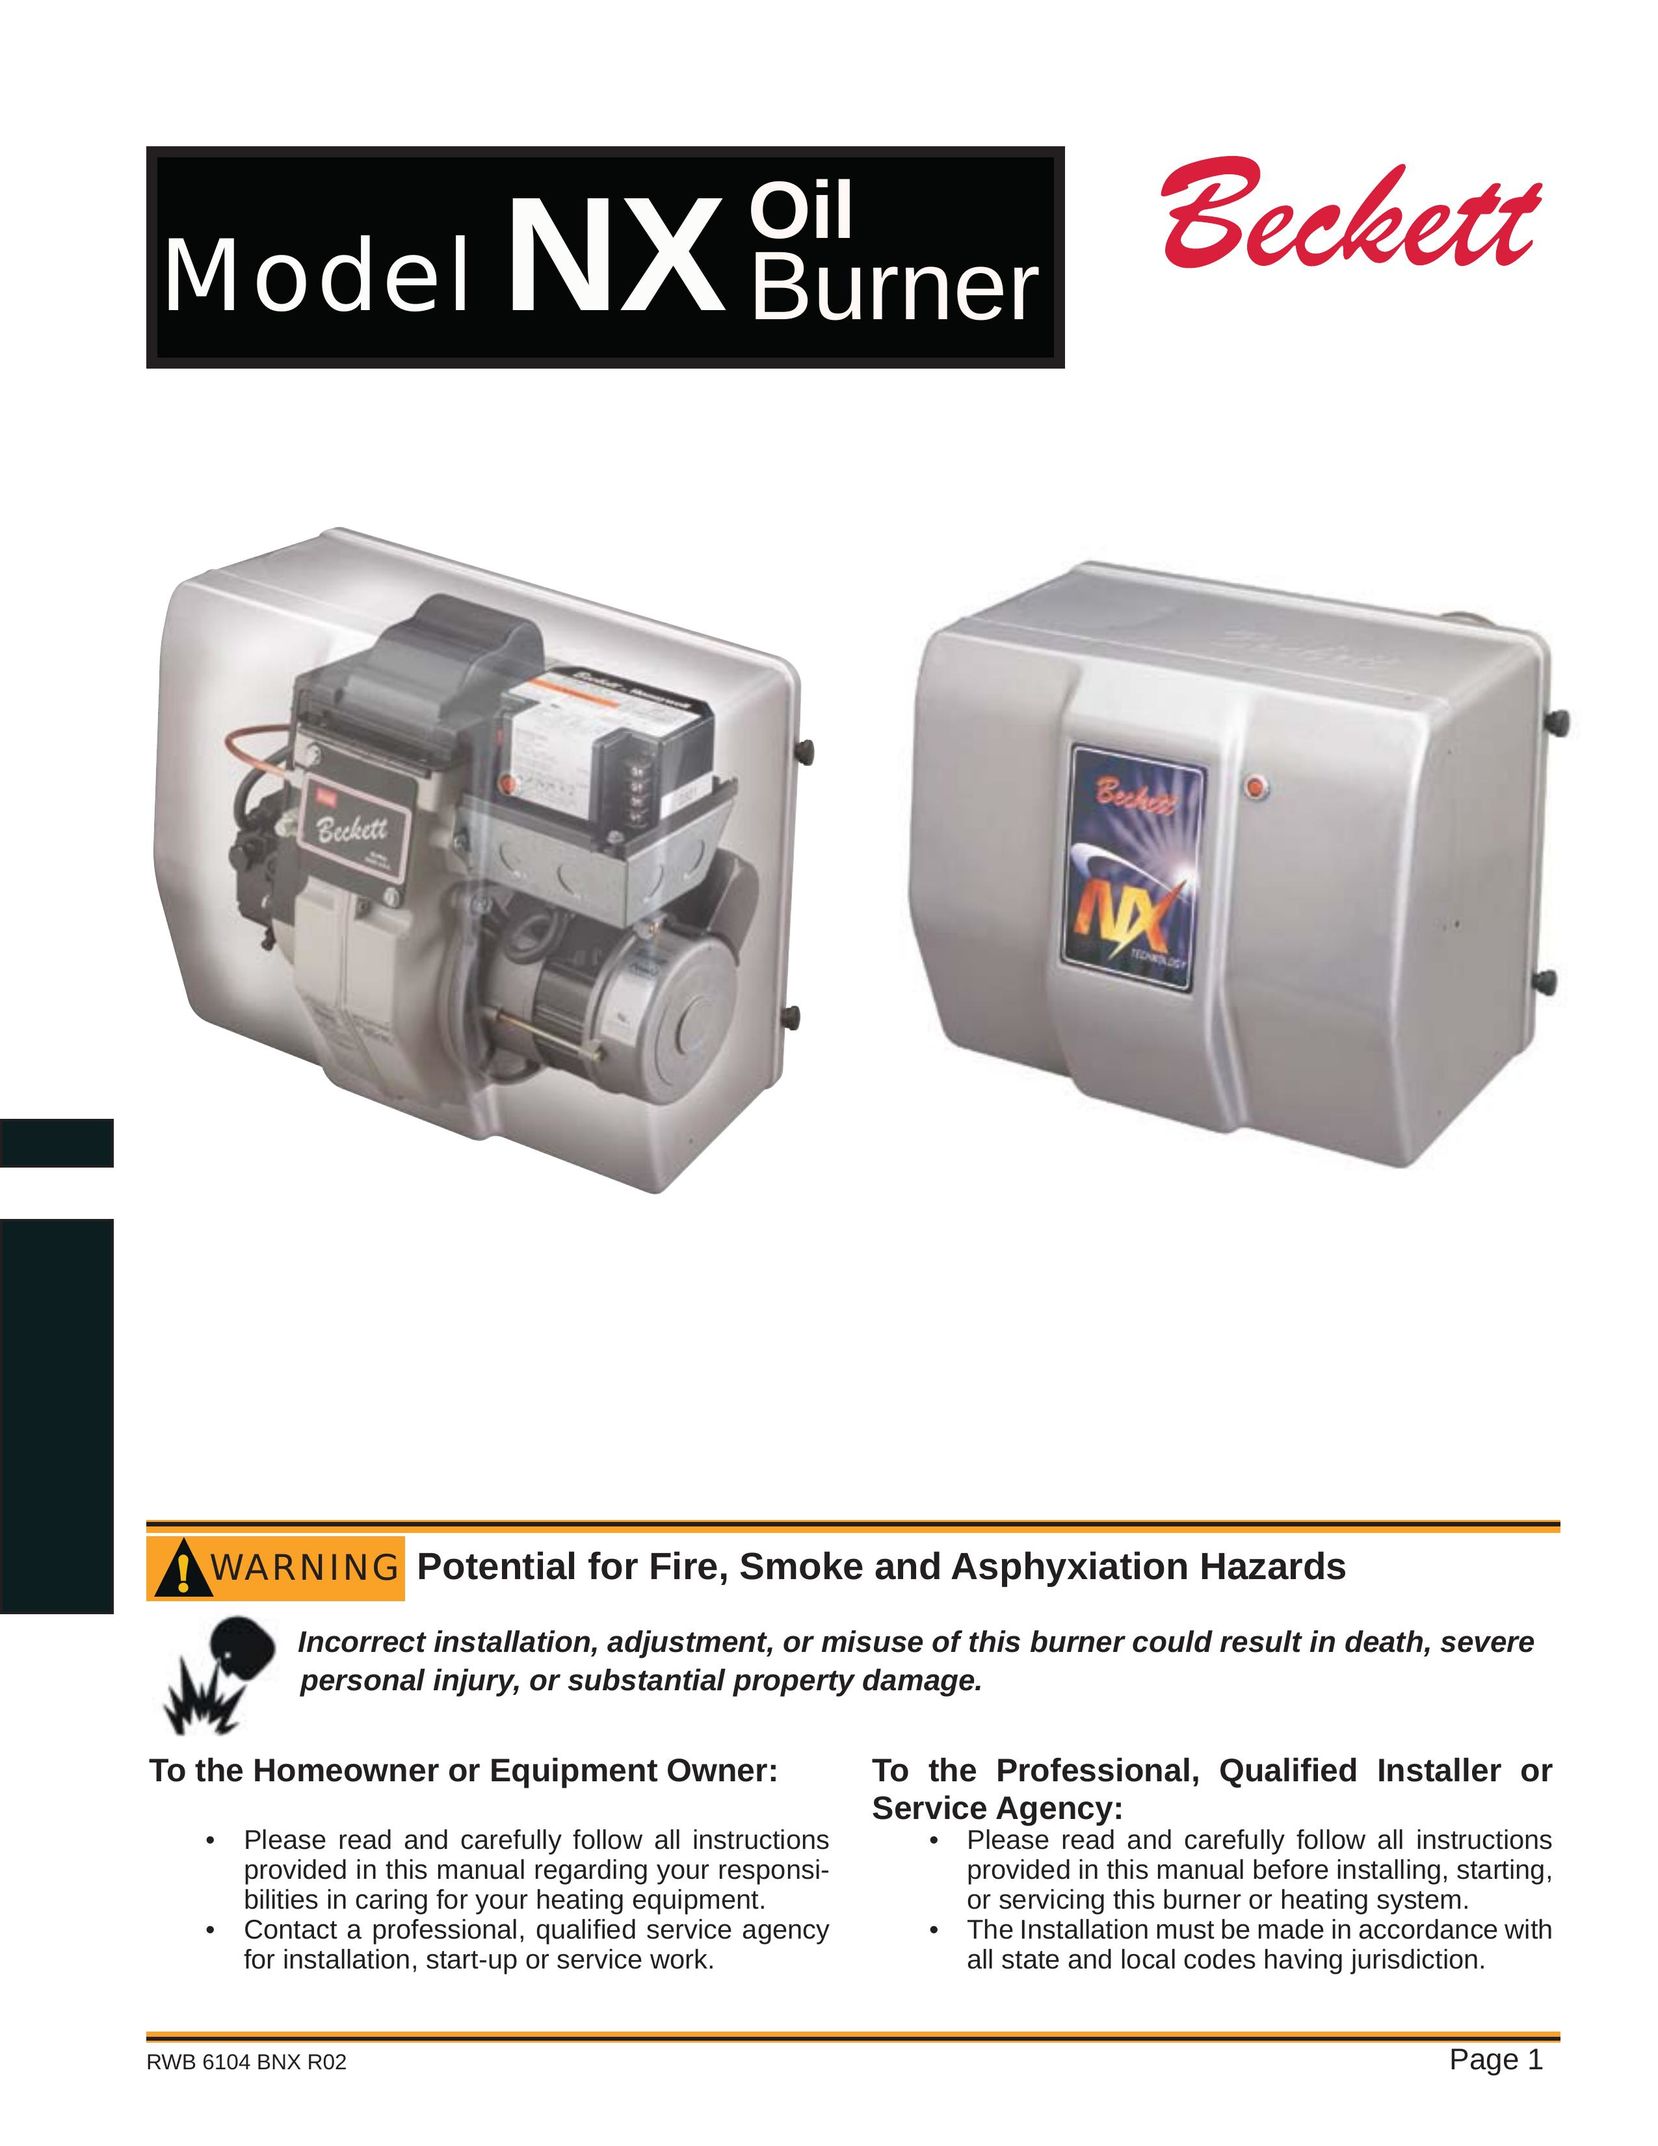 Beckett NX Burner User Manual